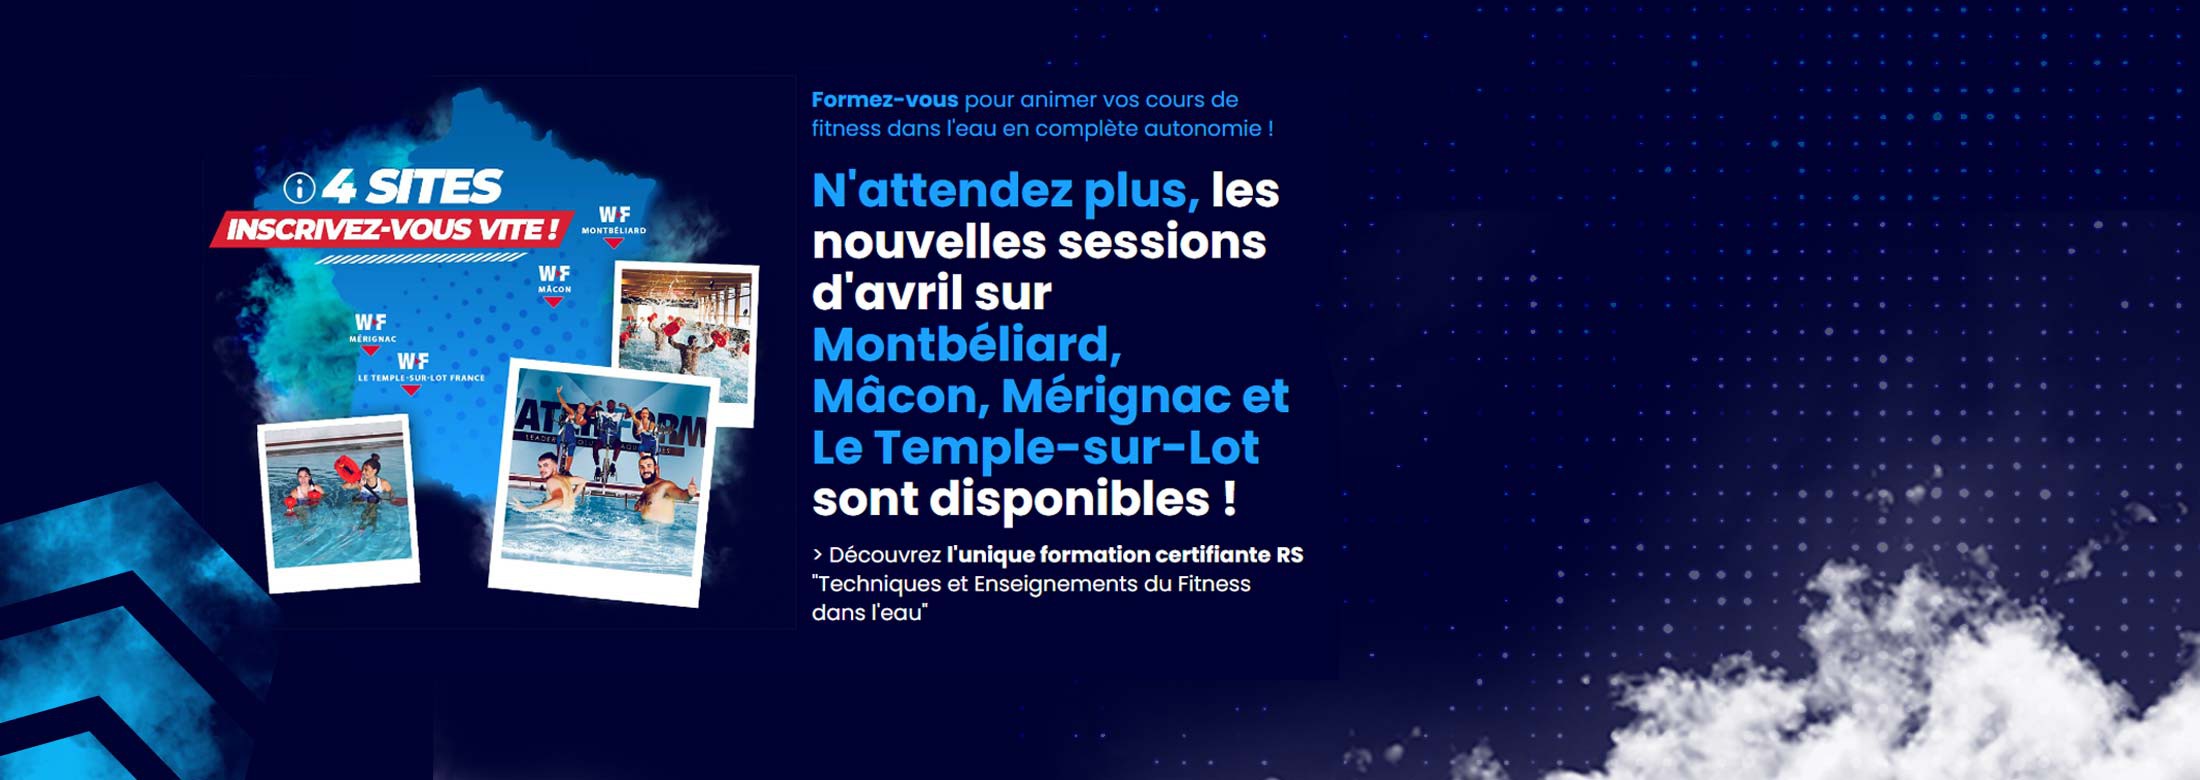 N'attendez plus, les nouvelles sessions d'avril sur Montbéliard, Mâcon, Mérignac et Le Temple-sur-Lot sont disponibles !